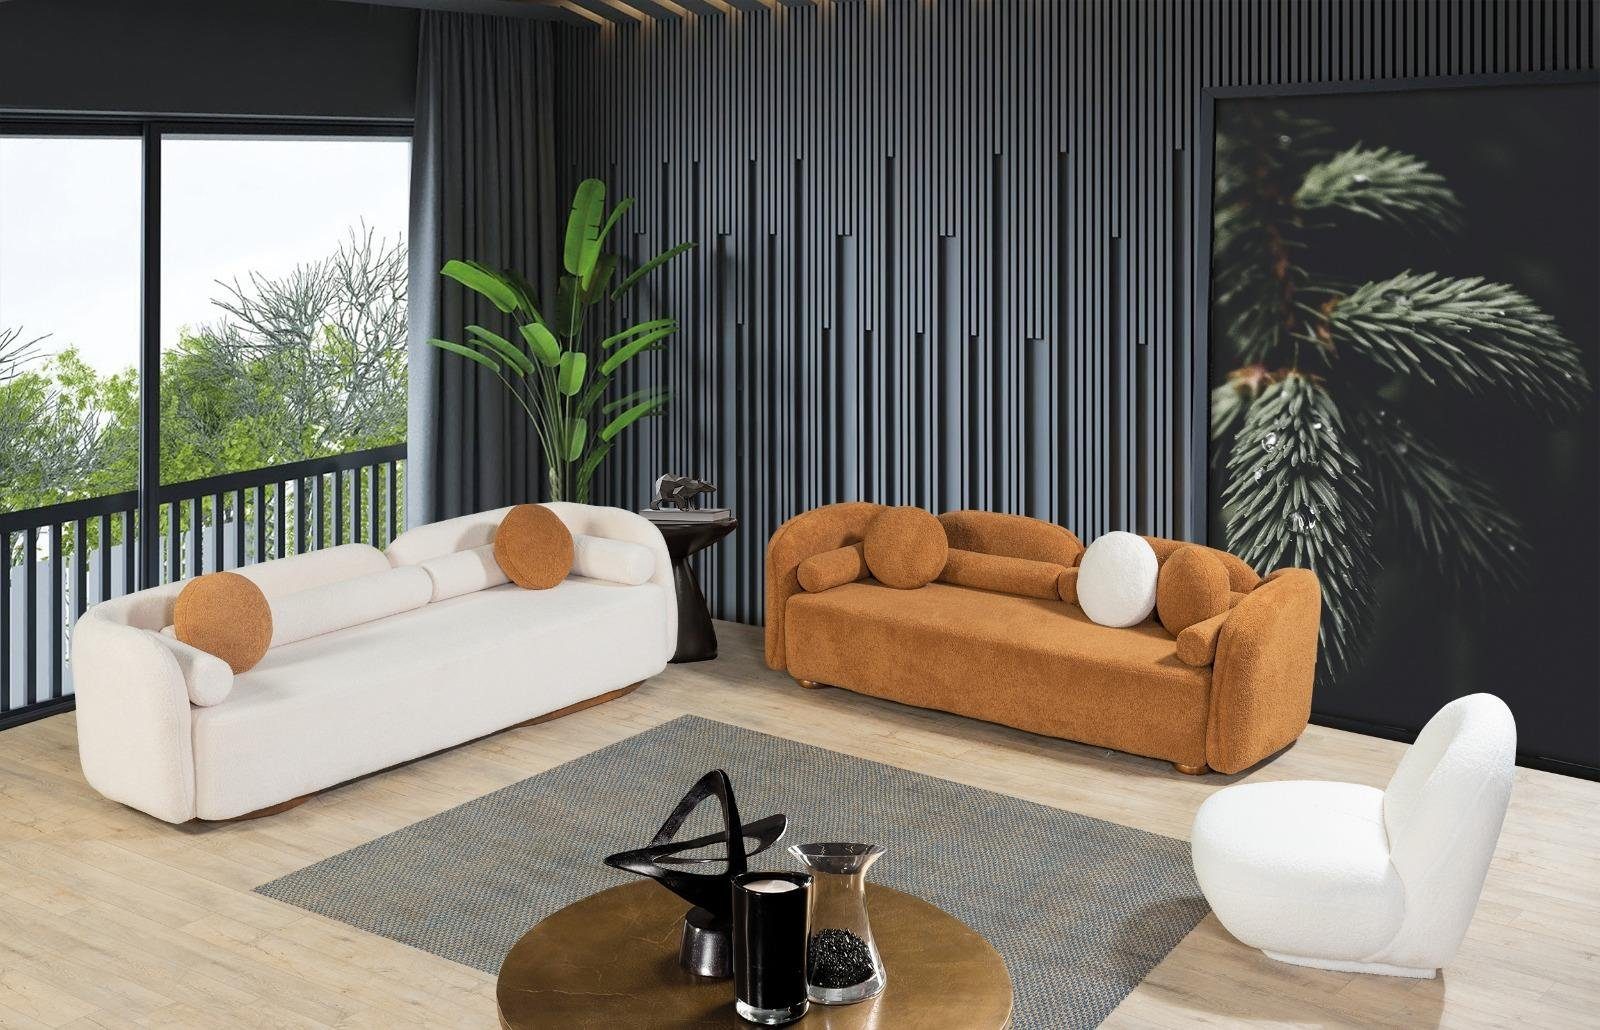 JVmoebel Sofa, Design Sofagarnitur Couch Weiß Stoff Couchen Möbel Sofa 3tlg Sitzpolster